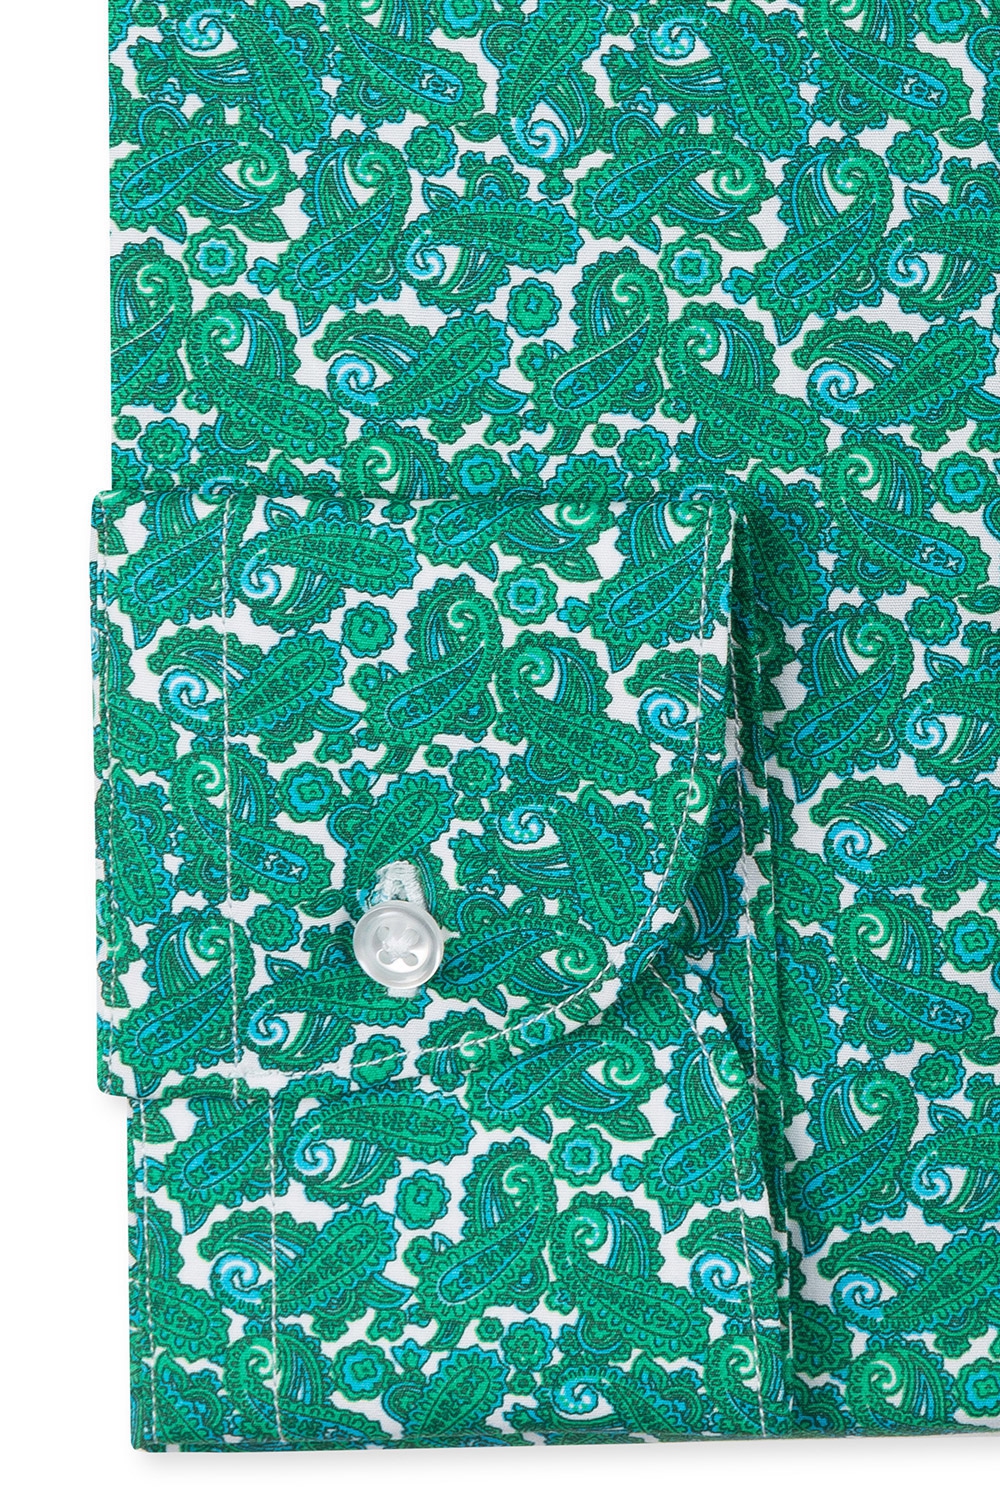 Camasa superslim verde print floral 2